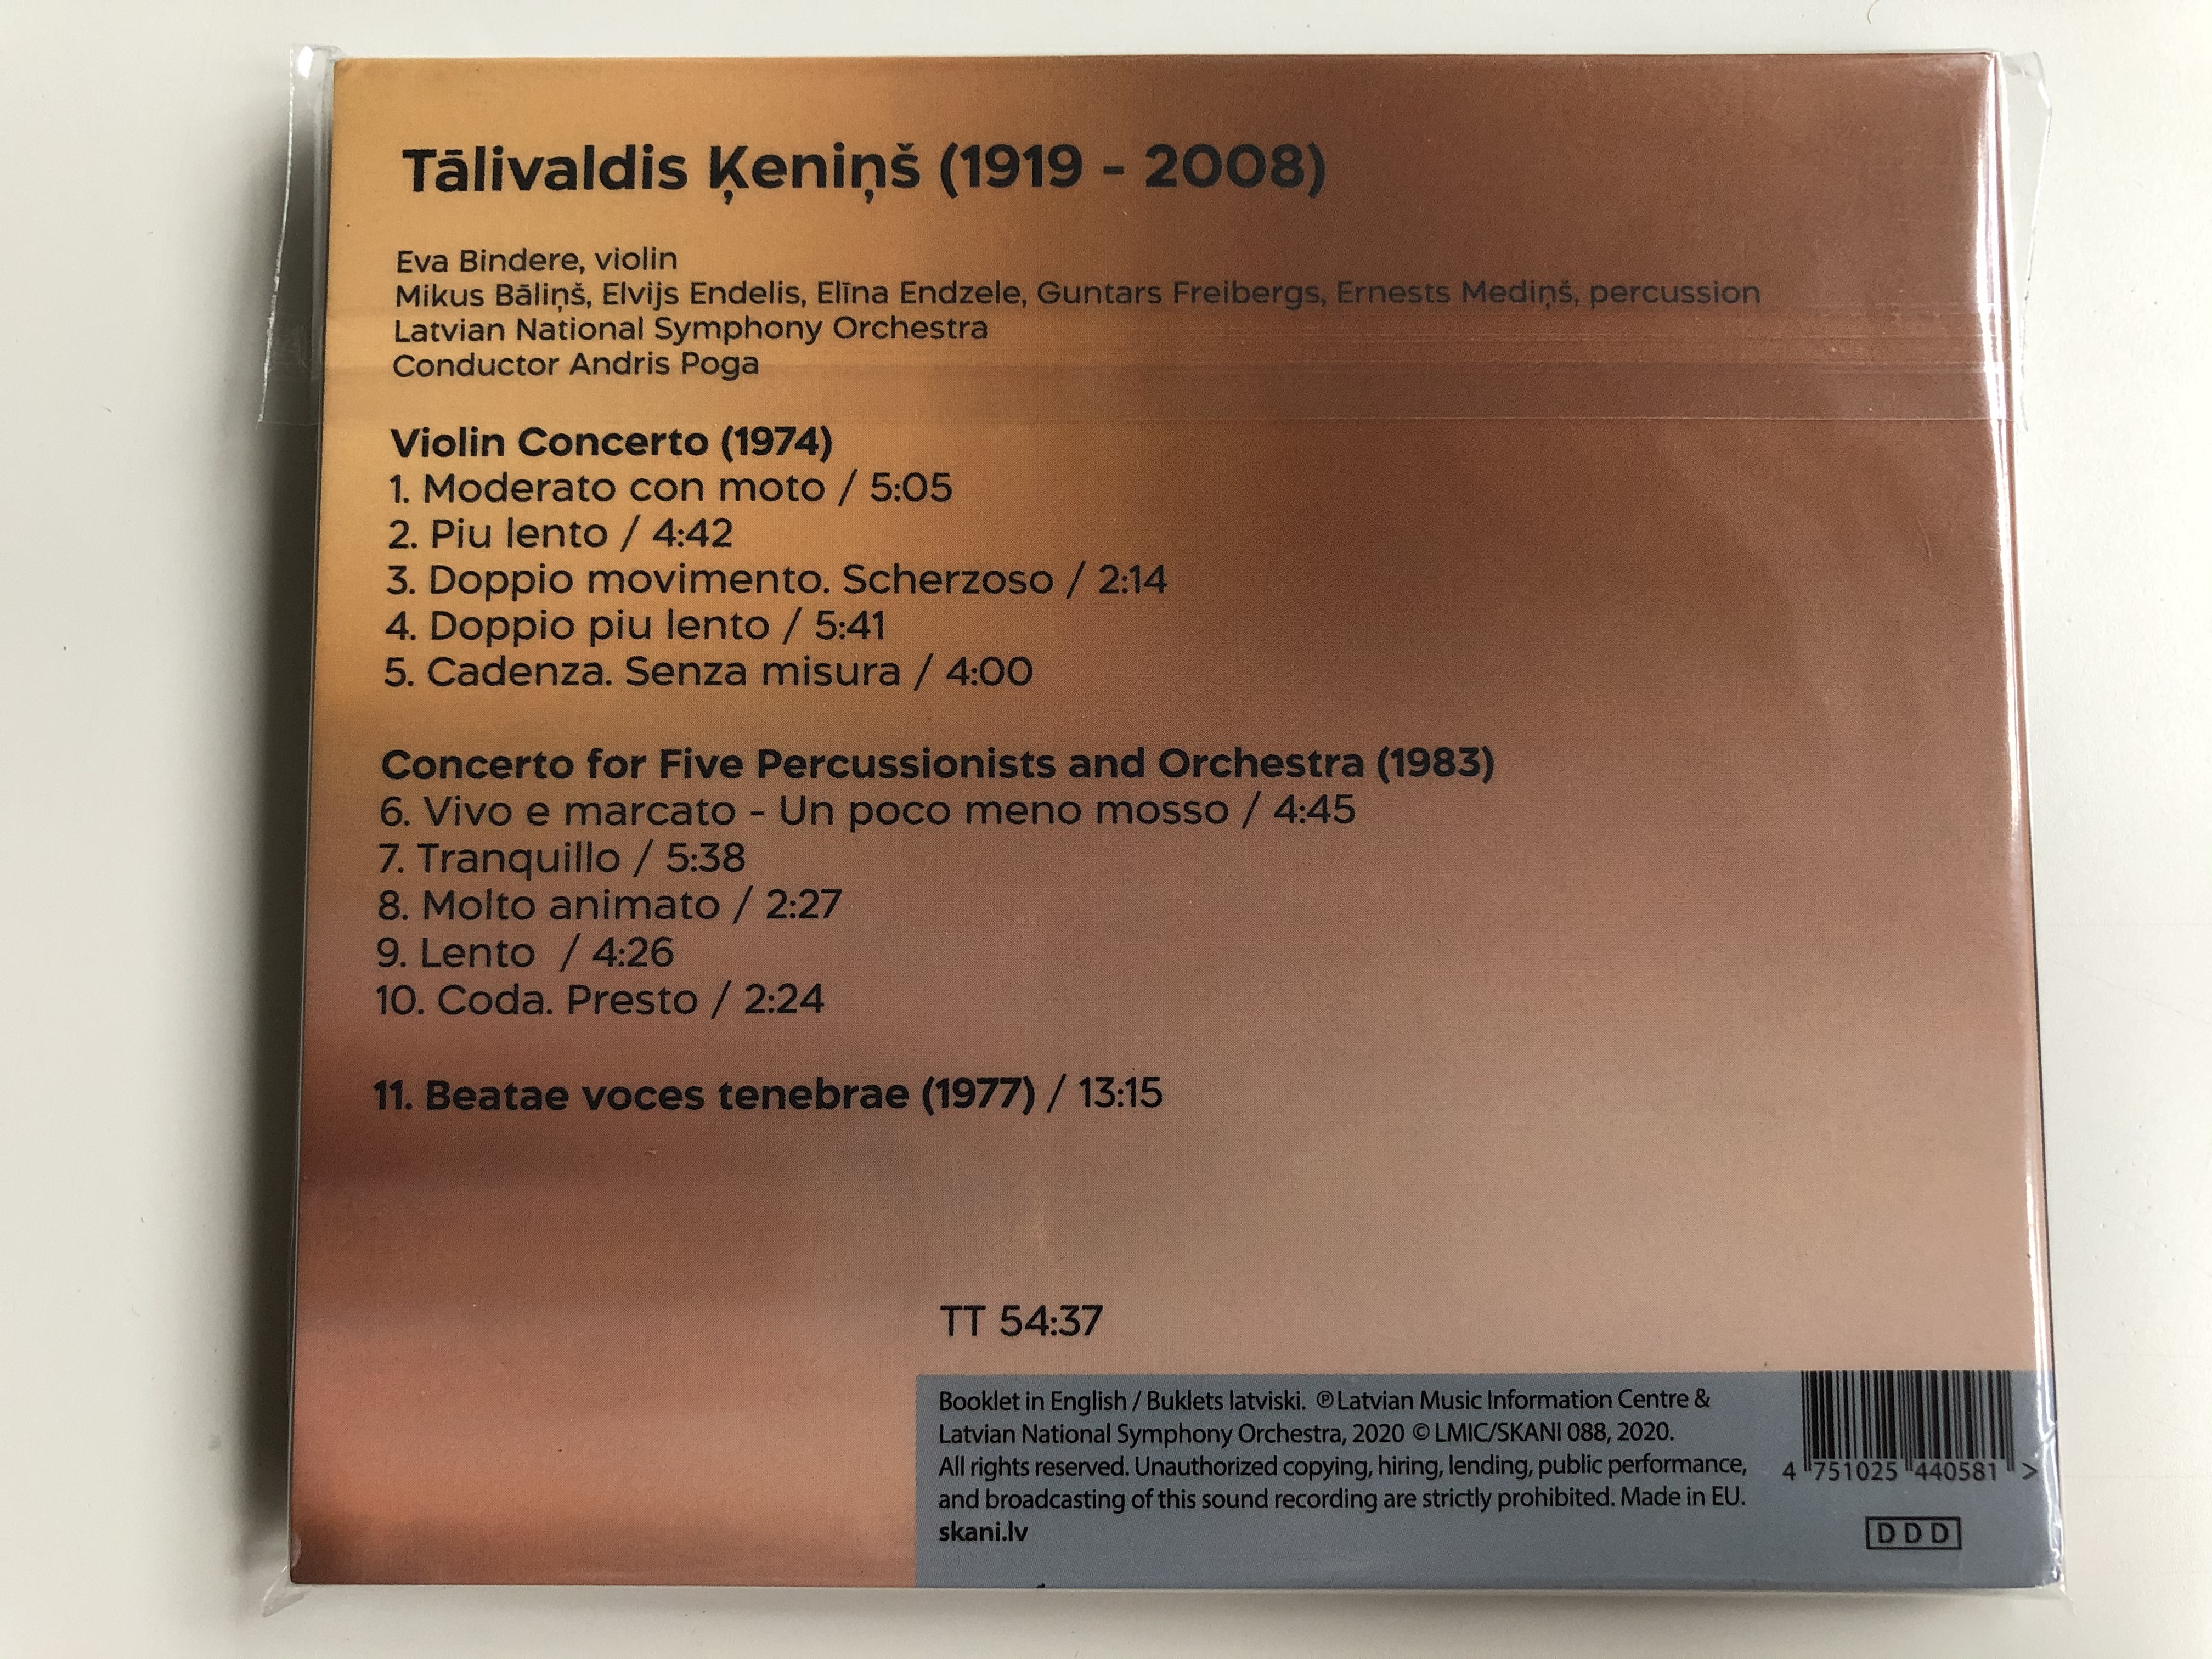 t-livaldis-eni-violin-concerto.-concerto-for-5-percussionsist-and-orchestra-breatae-voces-tenebrae-lmicskani-audio-cd-2020-lmicskani-088-2-.jpg